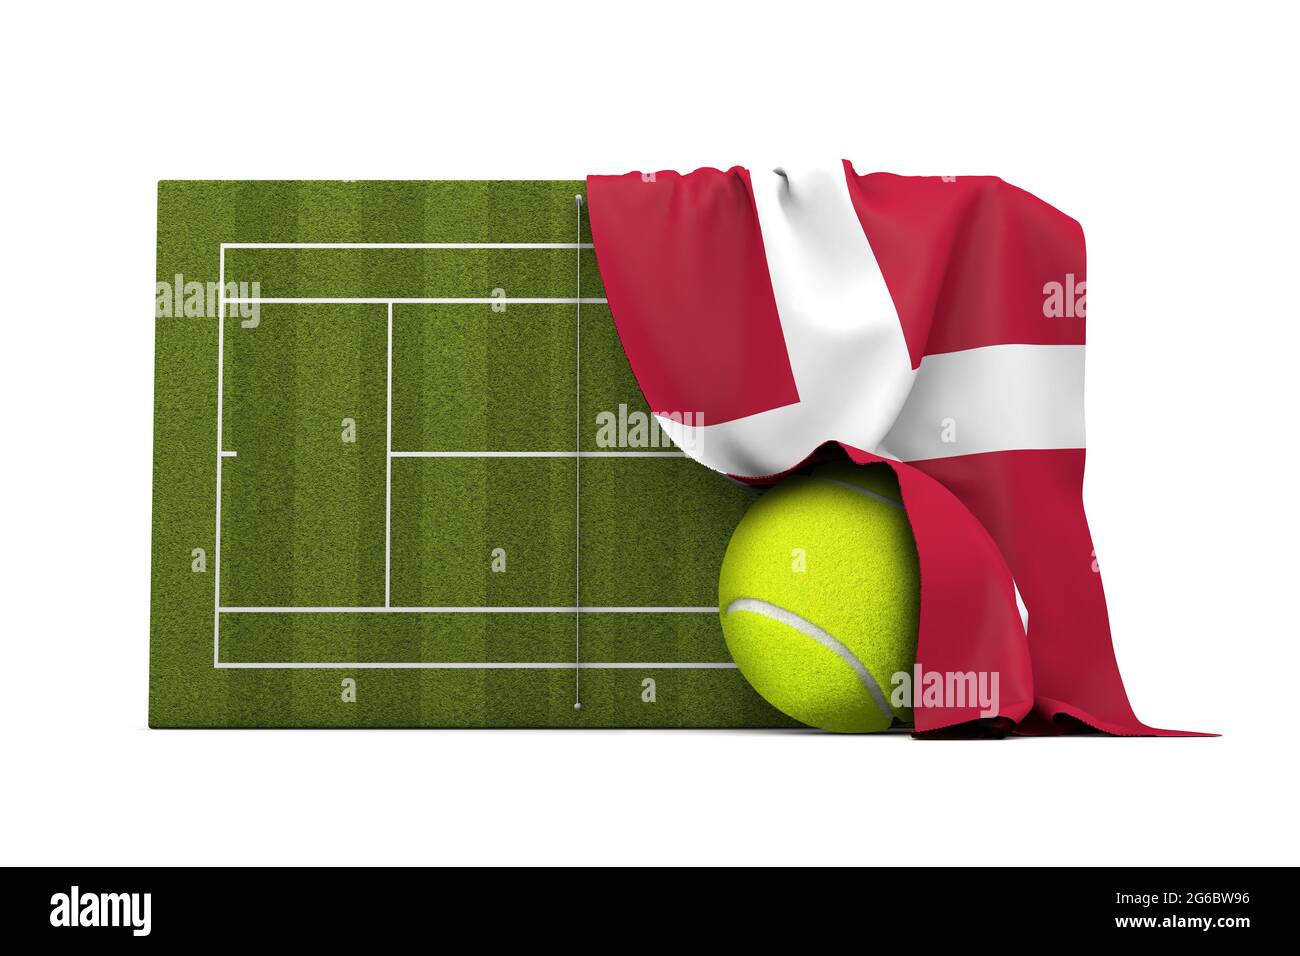 Drapeau du Danemark drapé sur un court de tennis en herbe et un ballon. Rendu 3D Banque D'Images